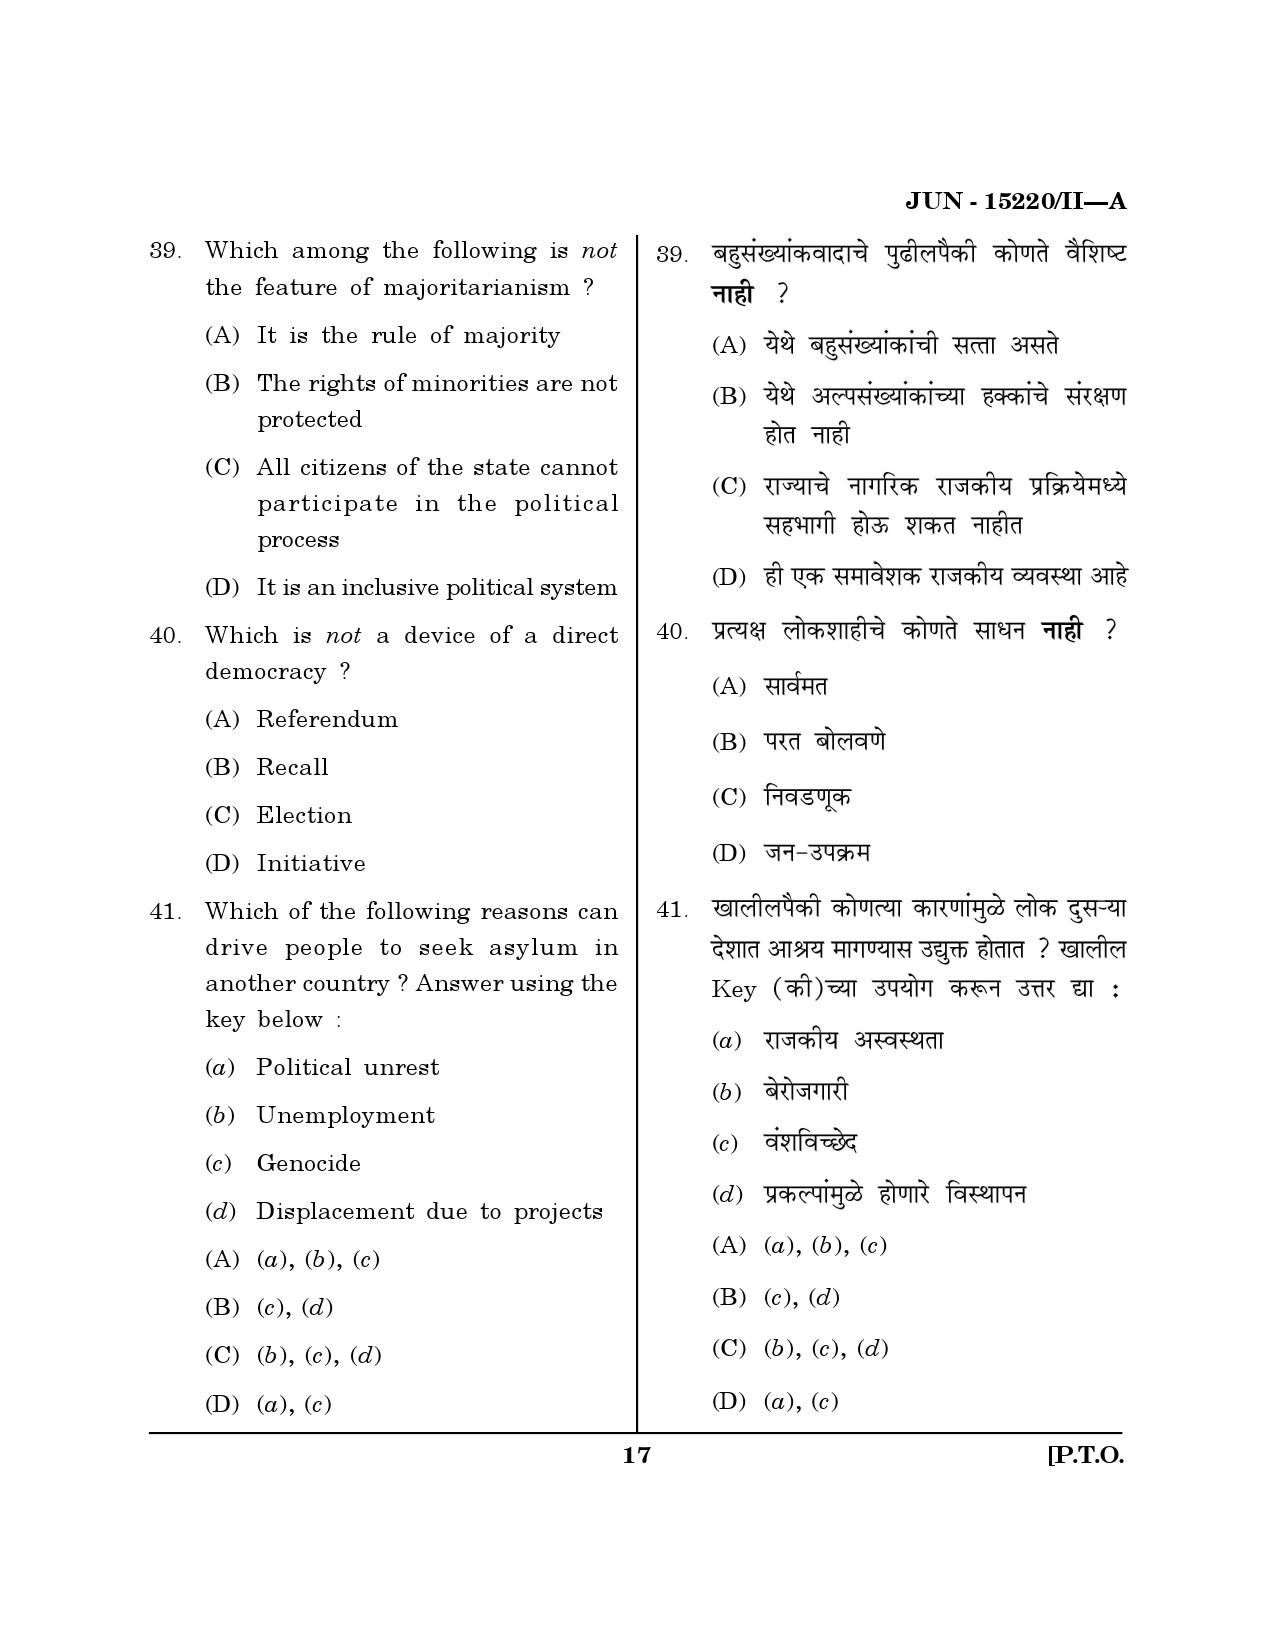 Maharashtra SET Political Science Question Paper II June 2020 16